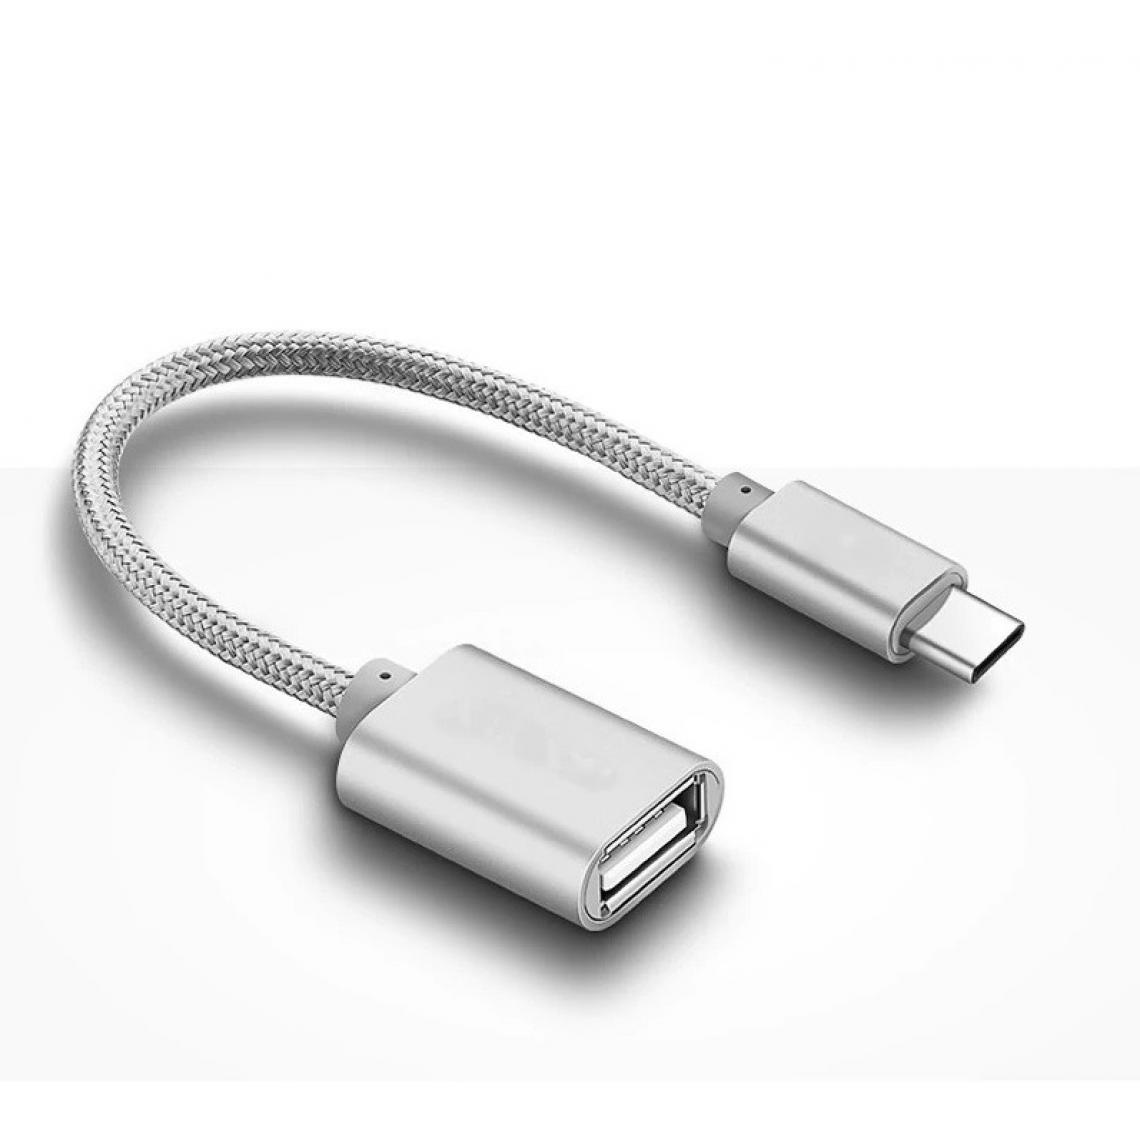 Shot - Adaptateur Type C/USB pour "OPPO Find X2 Neo" Smartphone & MAC USB-C Clef (ARGENT) - Autres accessoires smartphone